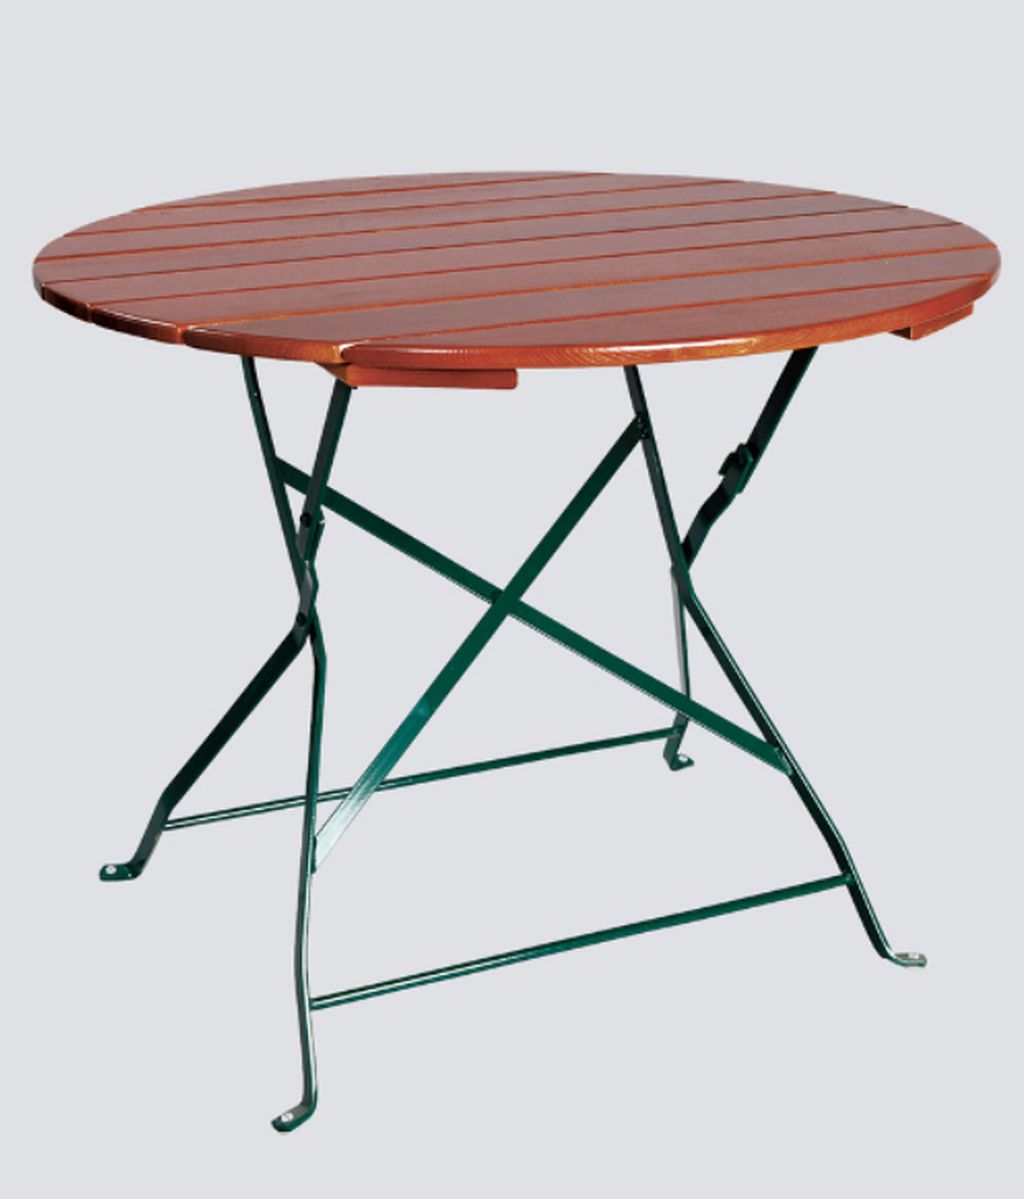 Zahradní stůl Klasik kulatý 103 cm jasan, skládací